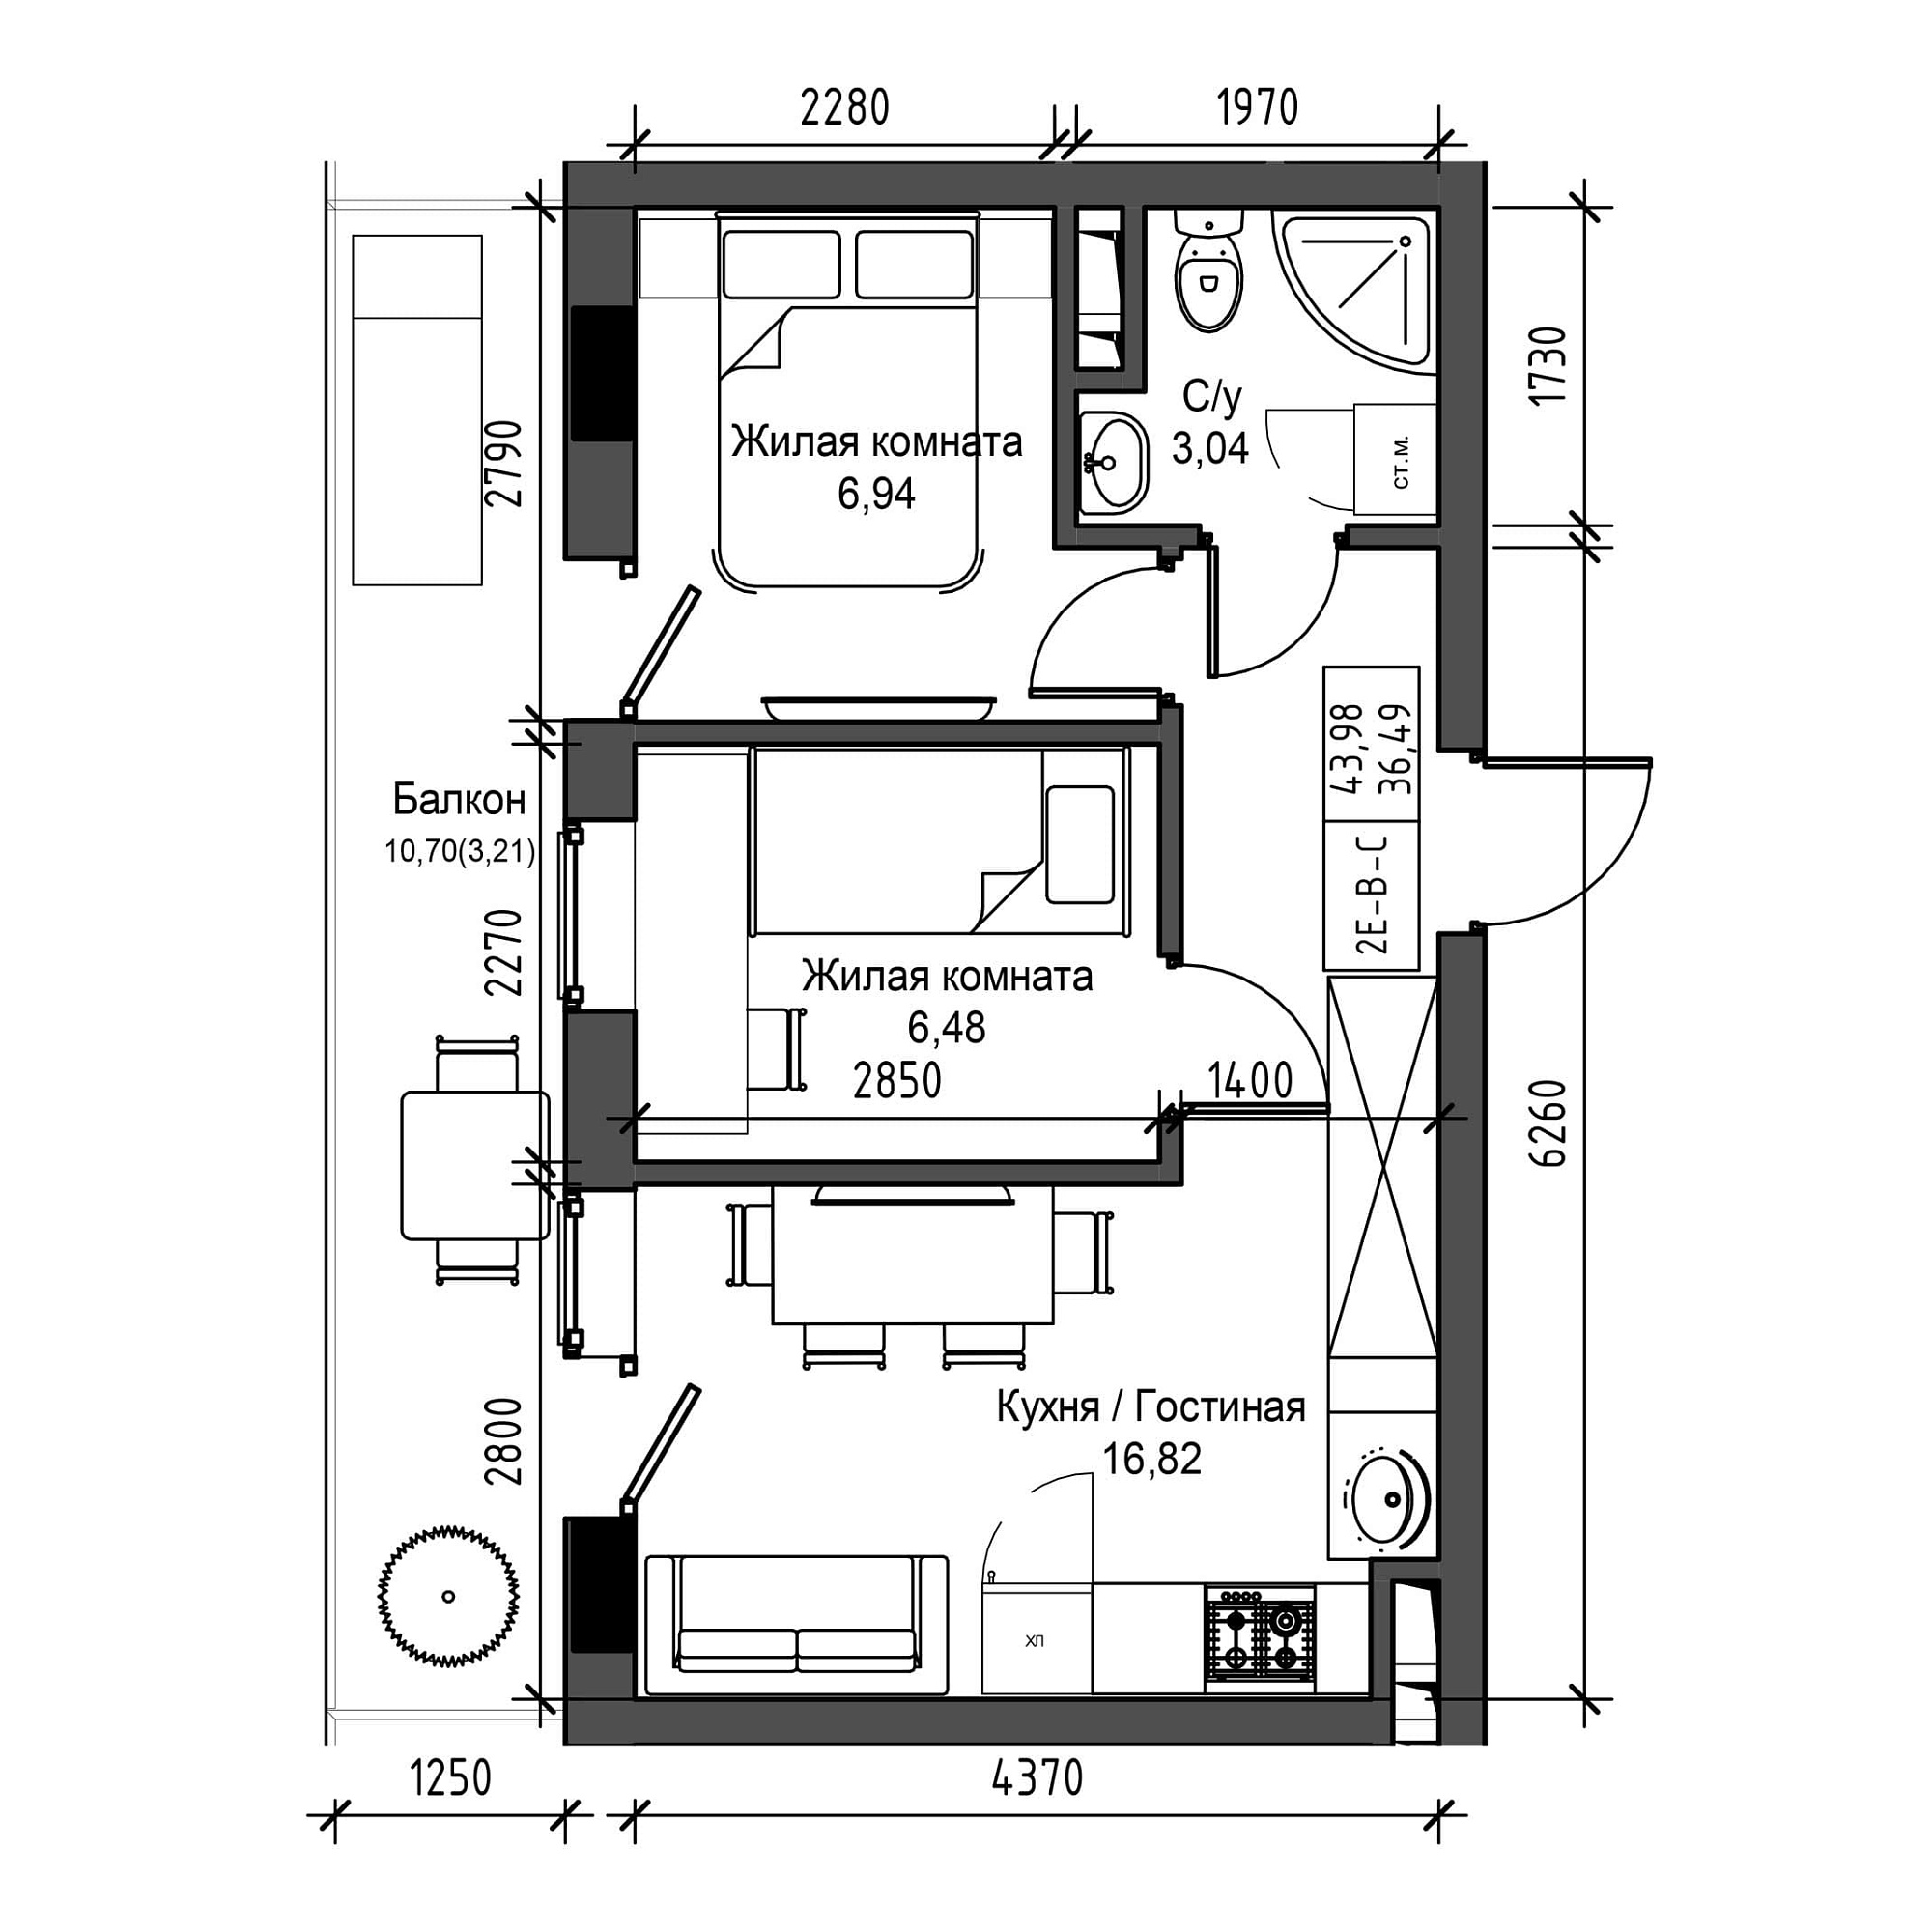 Планировка 2-к квартира площей 36.49м2, UM-001-07/0017.